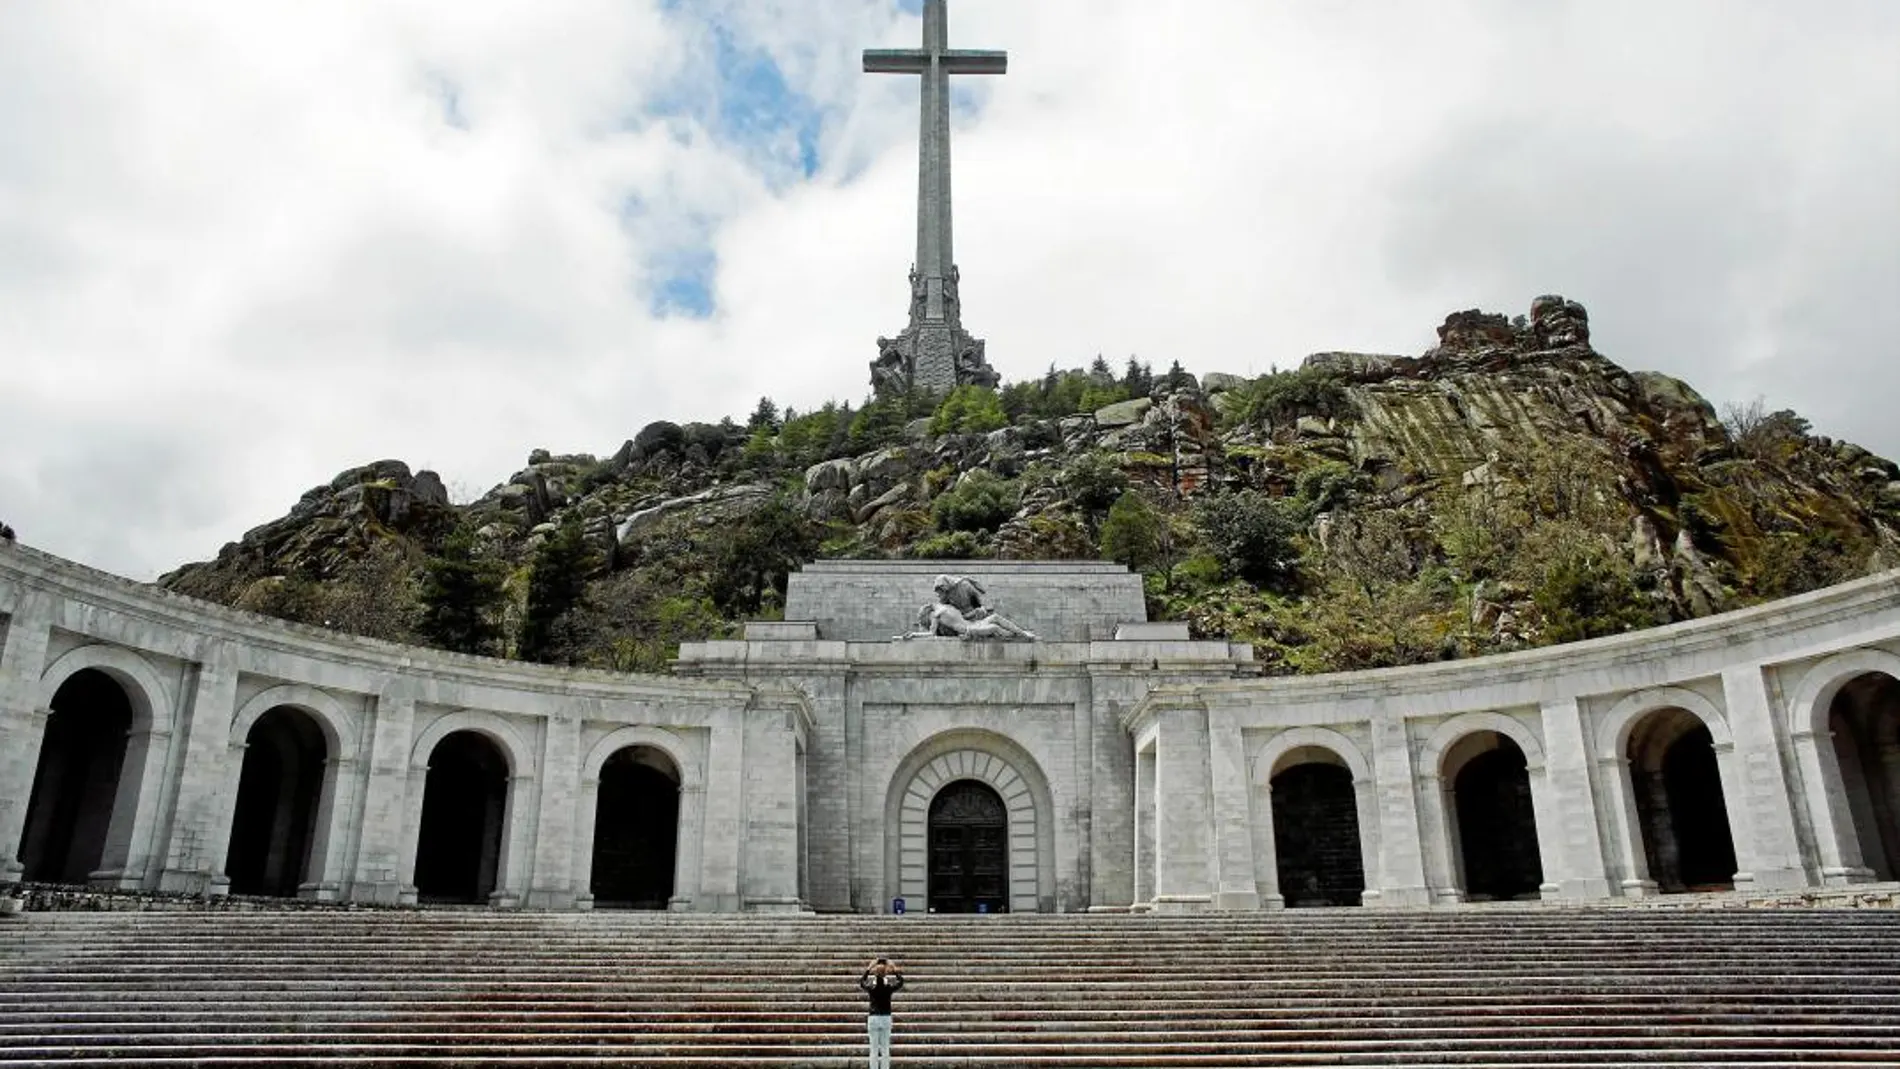 Está documentado que en el Valle de los Caídos hay enterrados unas 6.000 personas procedentes de Cataluña